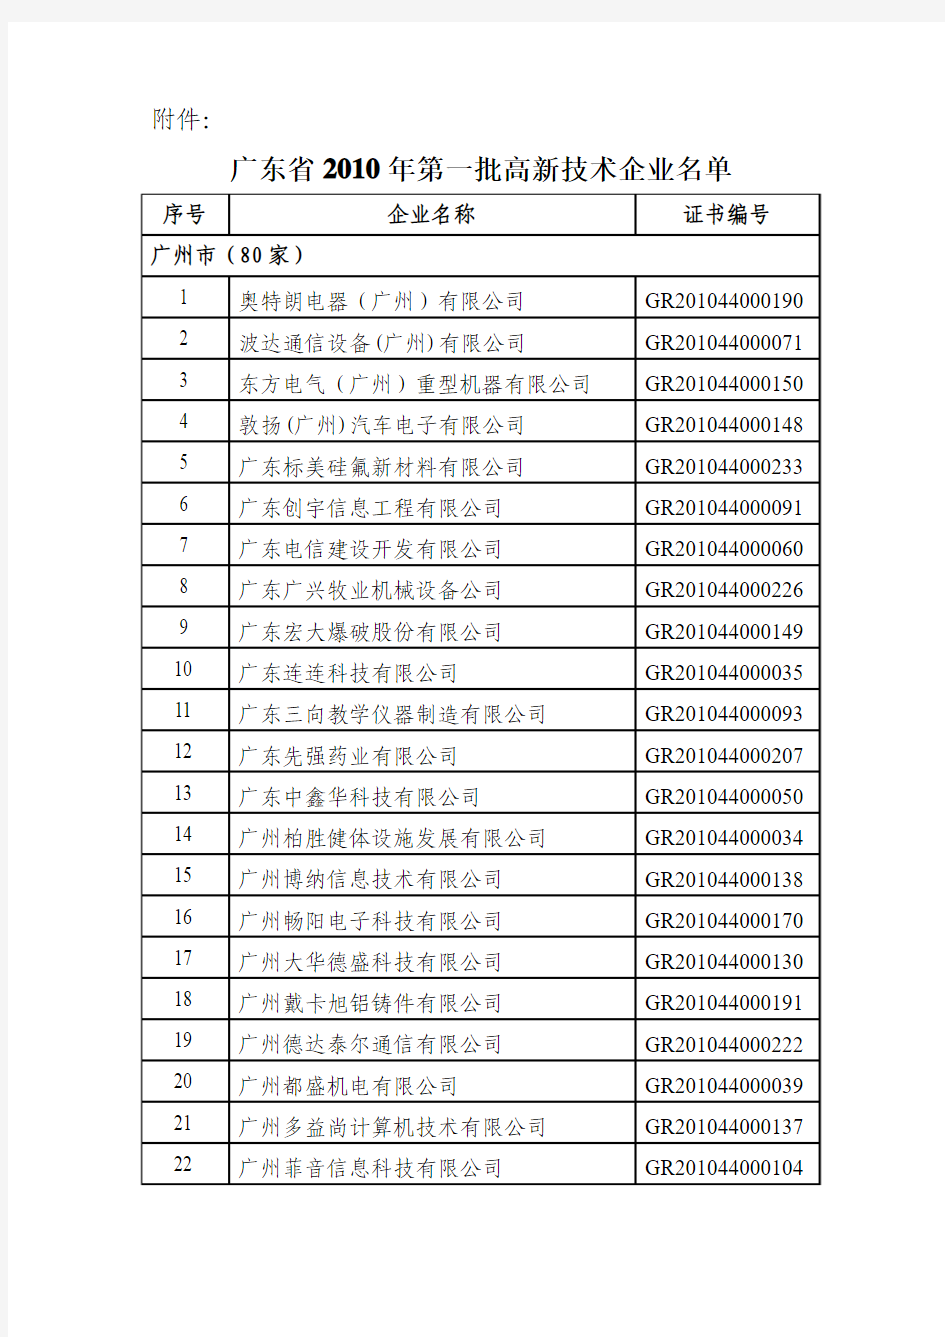 广东省2010年第一批高新技术企业名单